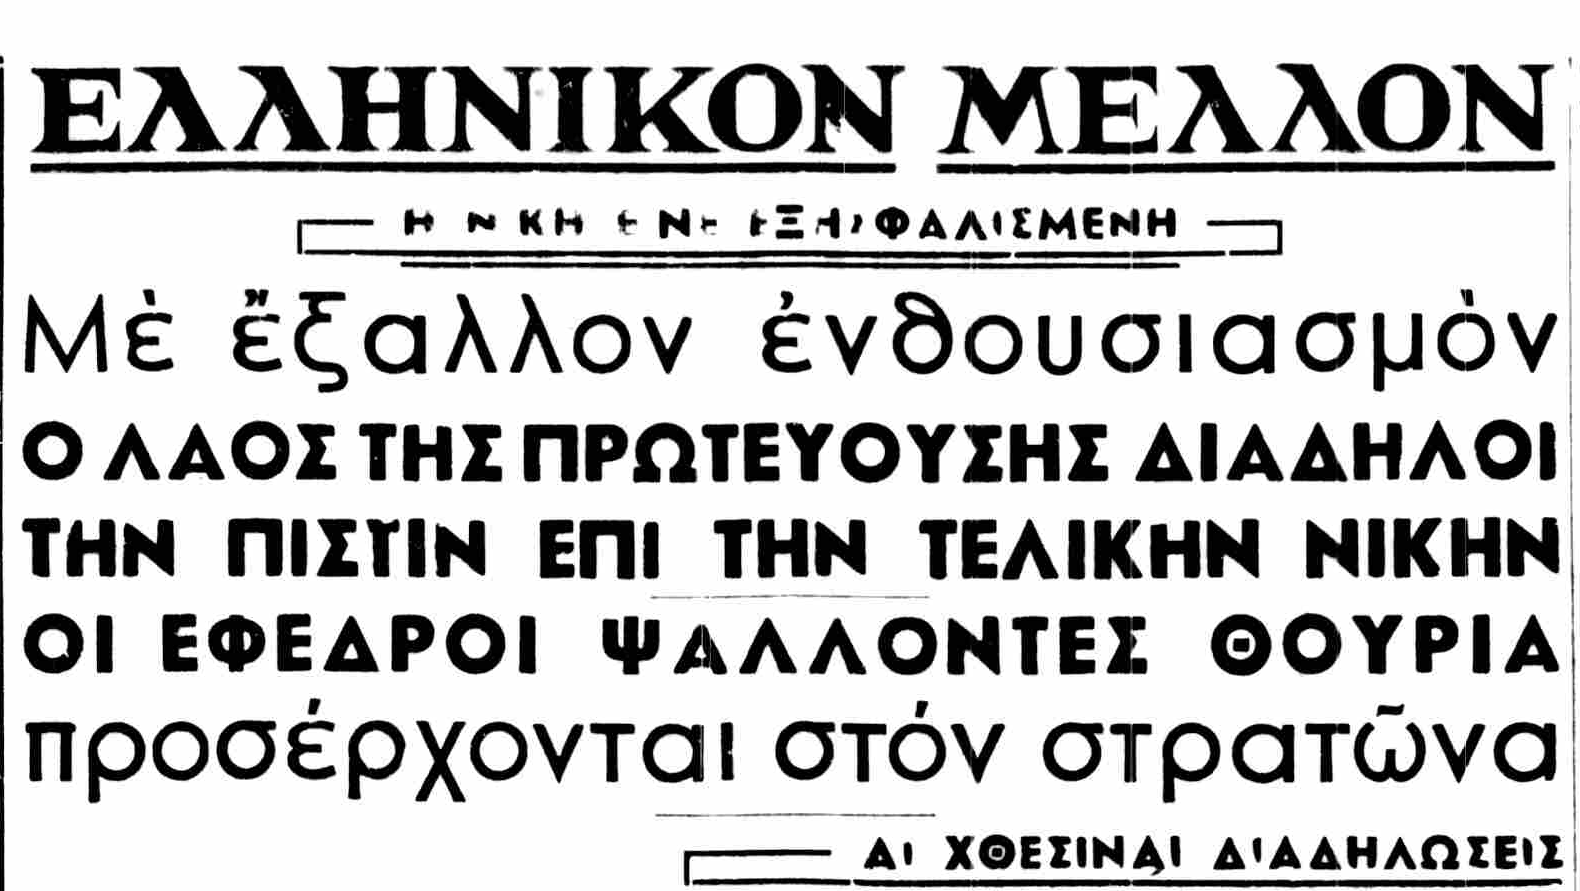 ΕΛΛΗΝΙΚΟΝ ΜΕΛΛΟΝ 30-10-1940.png